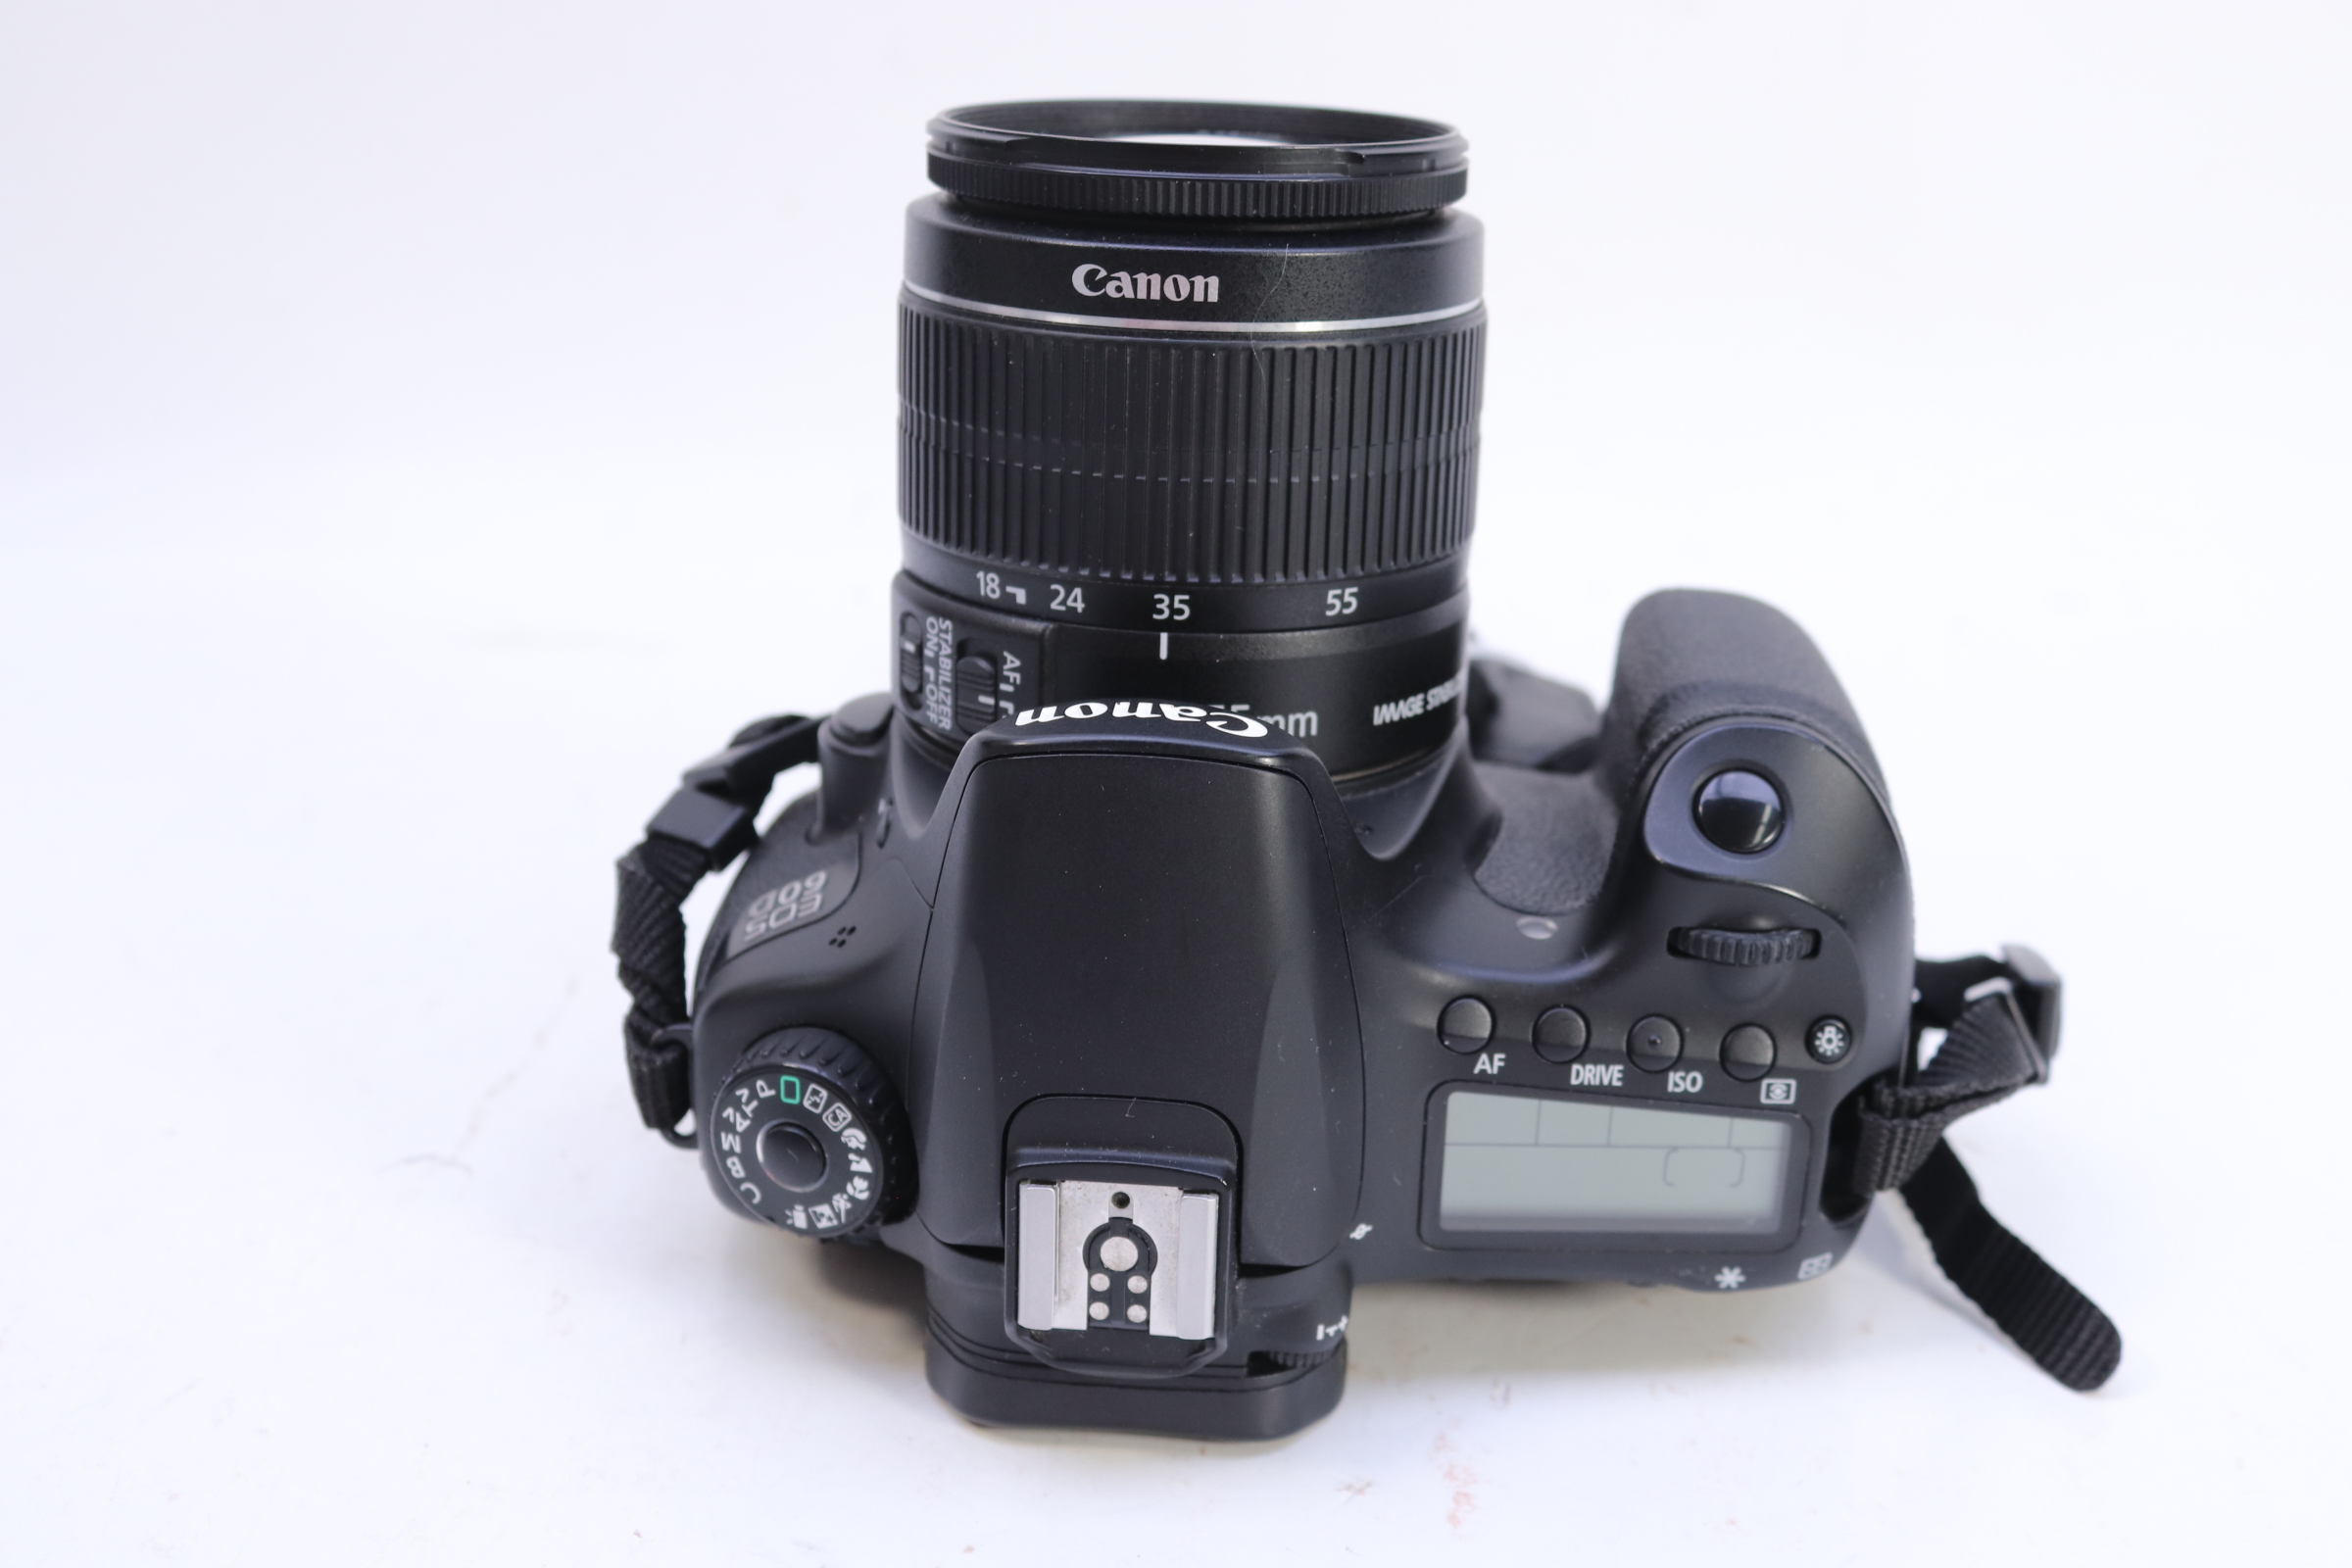 Nếu bạn đang tìm kiếm một chiếc máy ảnh DSLR với độ phân giải cao và đầy tính năng chuyên nghiệp thì Canon DS126281 EOS 60D 18.0 MP là lựa chọn hoàn hảo cho bạn. Chiếc máy ảnh này được trang bị nhiều tính năng đáng kinh ngạc, giúp bạn chụp ảnh với độ nét cao và chất lượng hình ảnh đẹp nhất. Nhấn vào ảnh để khám phá thêm về máy ảnh Canon DS126281 EOS 60D 18.0 MP này!